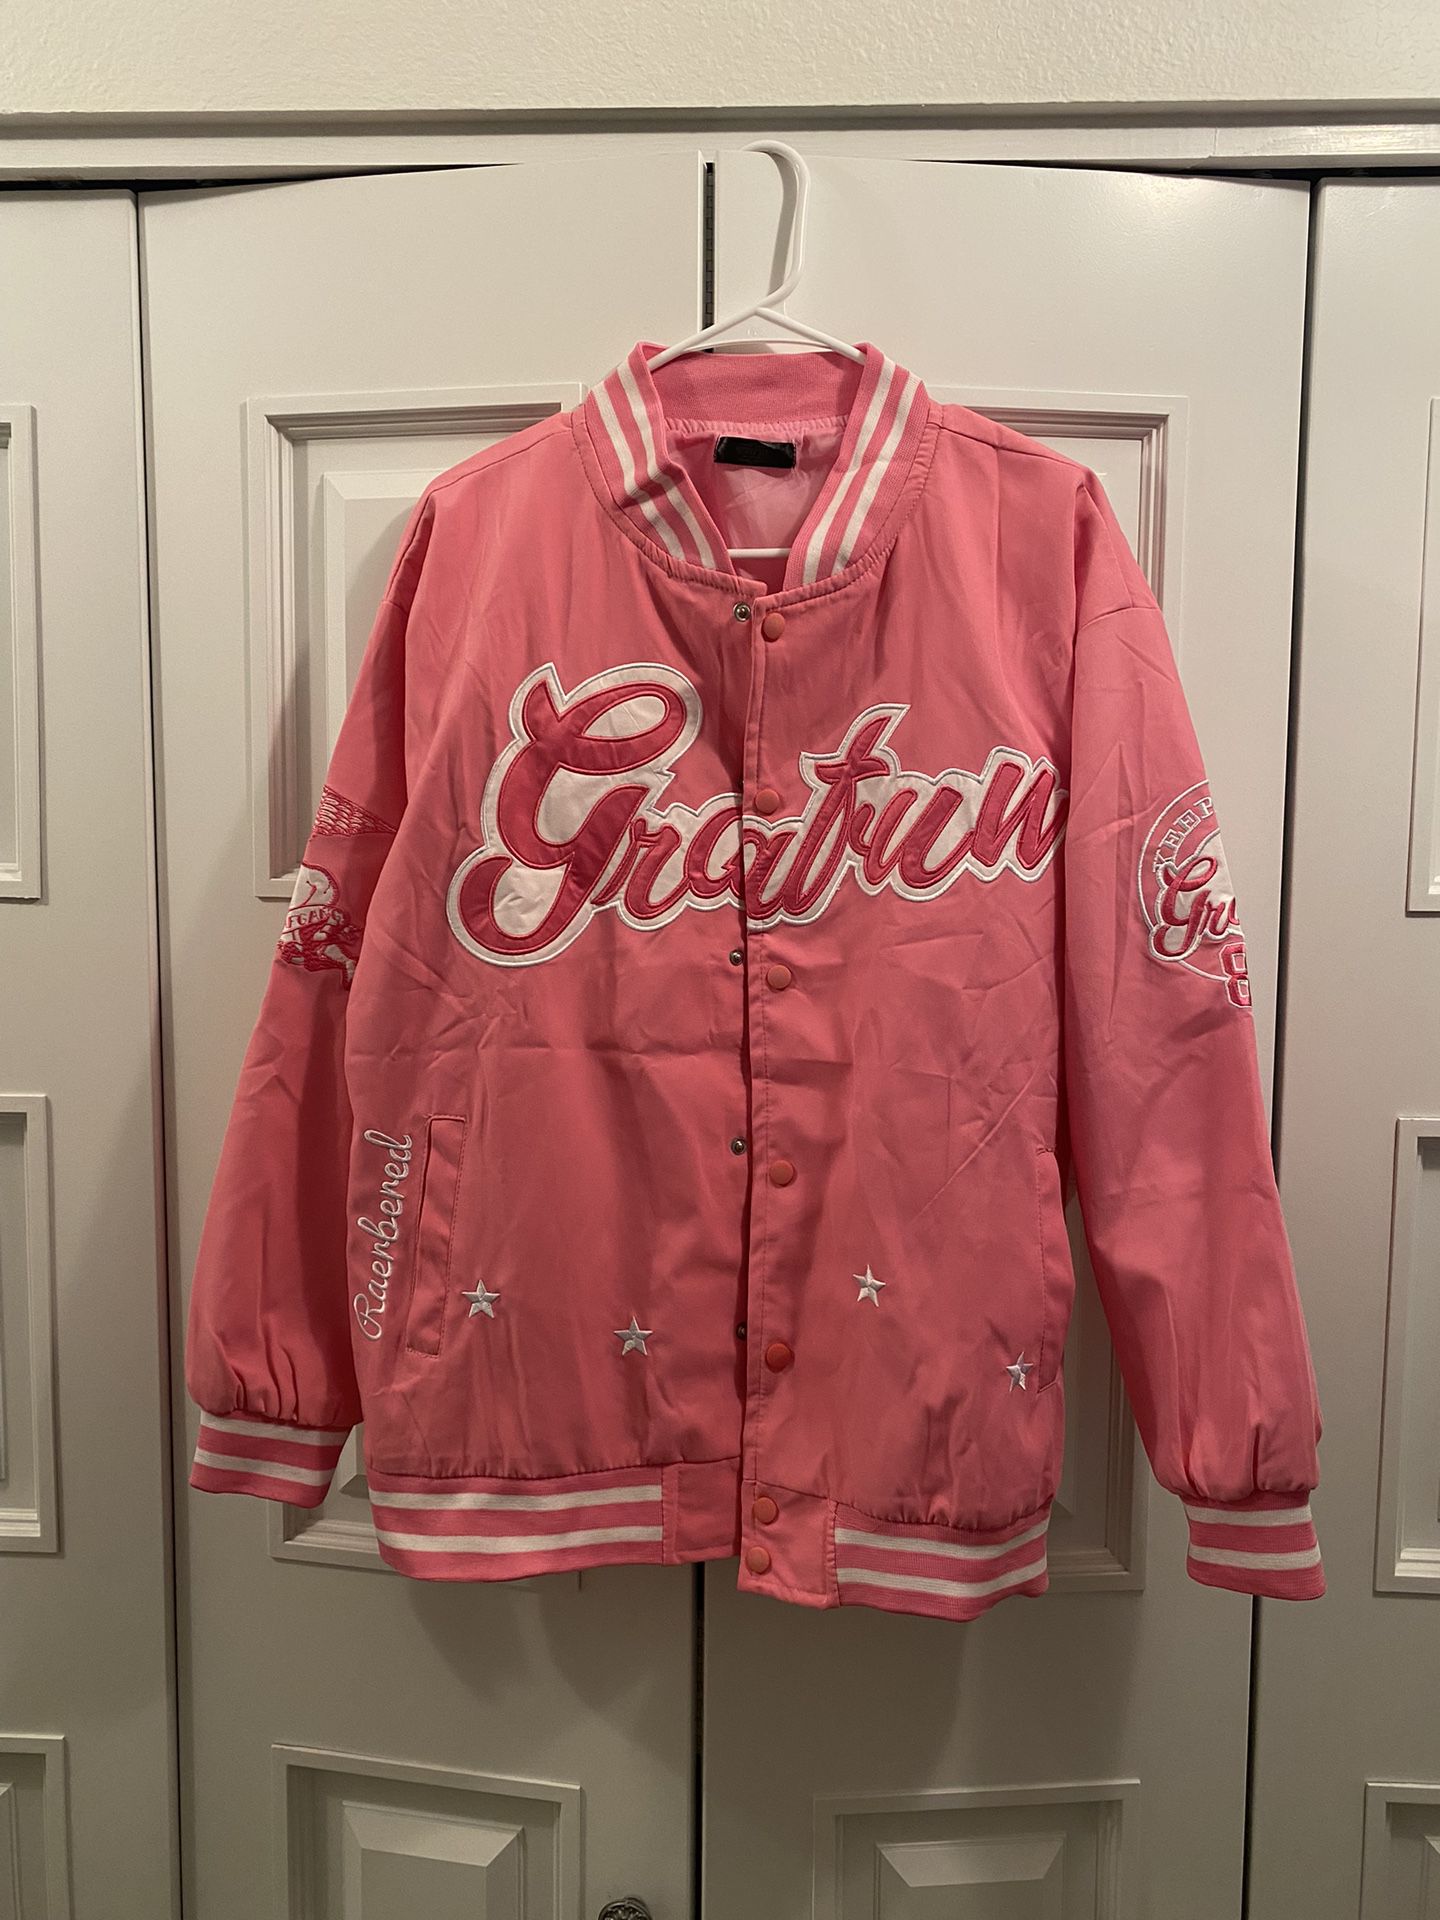 Pink Nylon Bomber Jacket